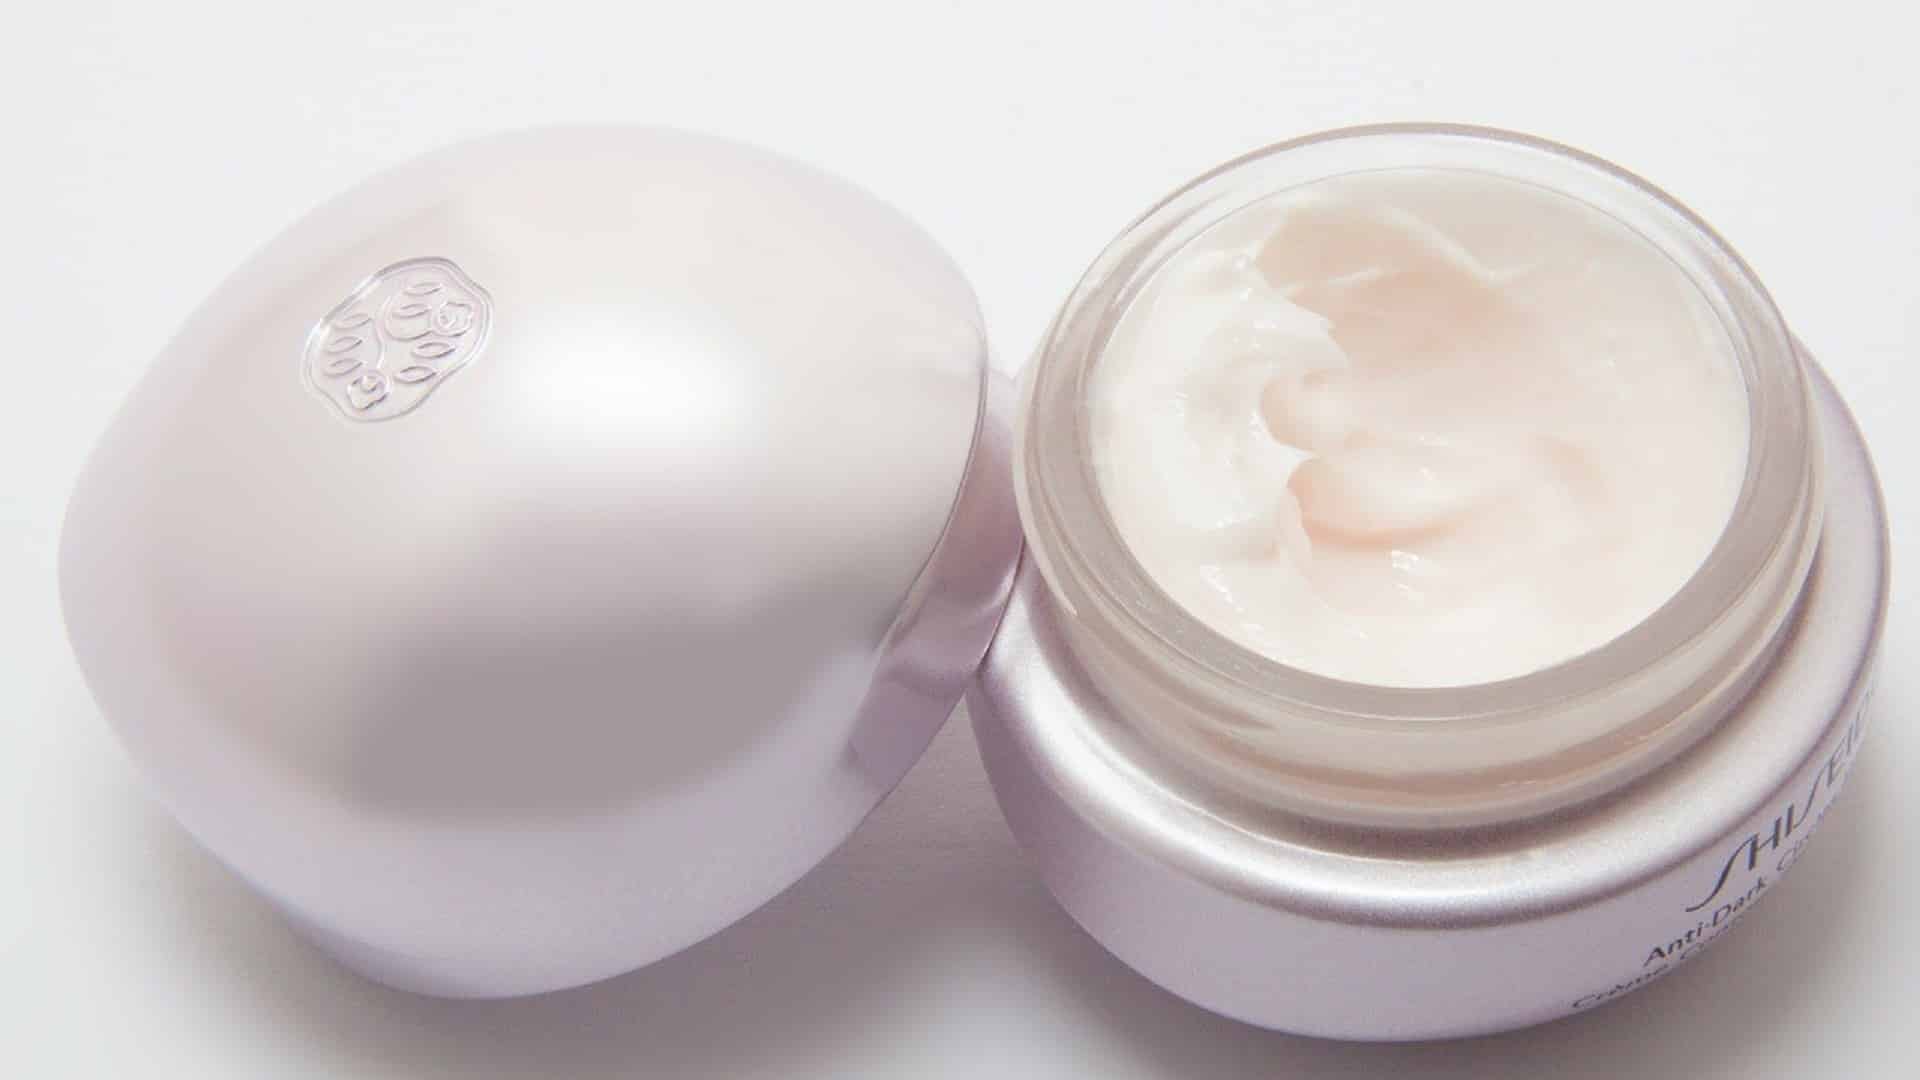 Best Korean Eye Cream – For Dark Circles & Wrinkles